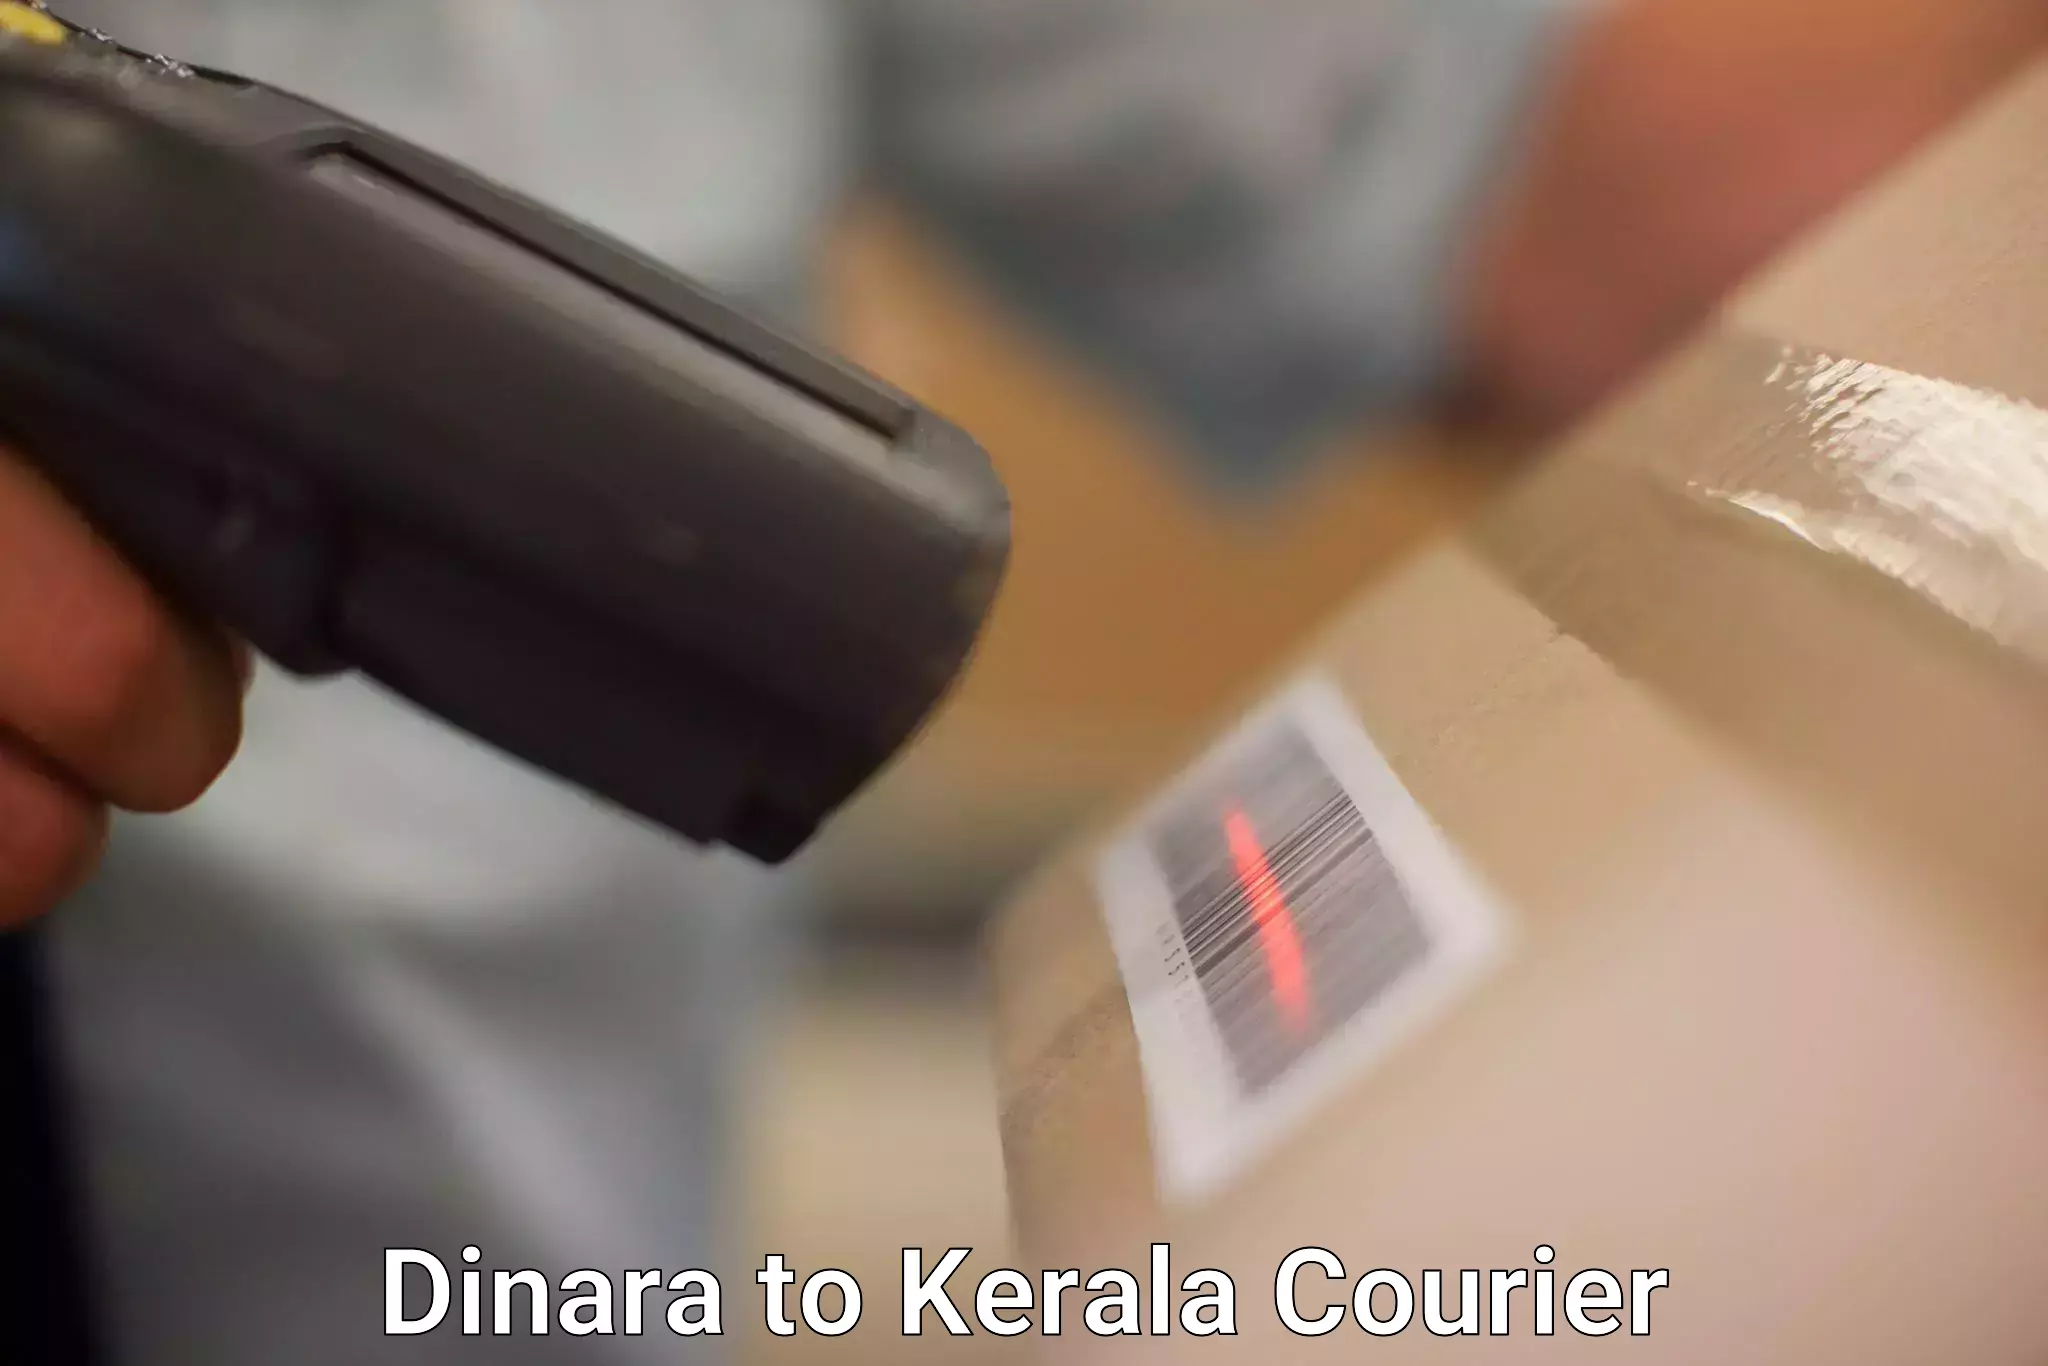 Customizable shipping options Dinara to Malappuram